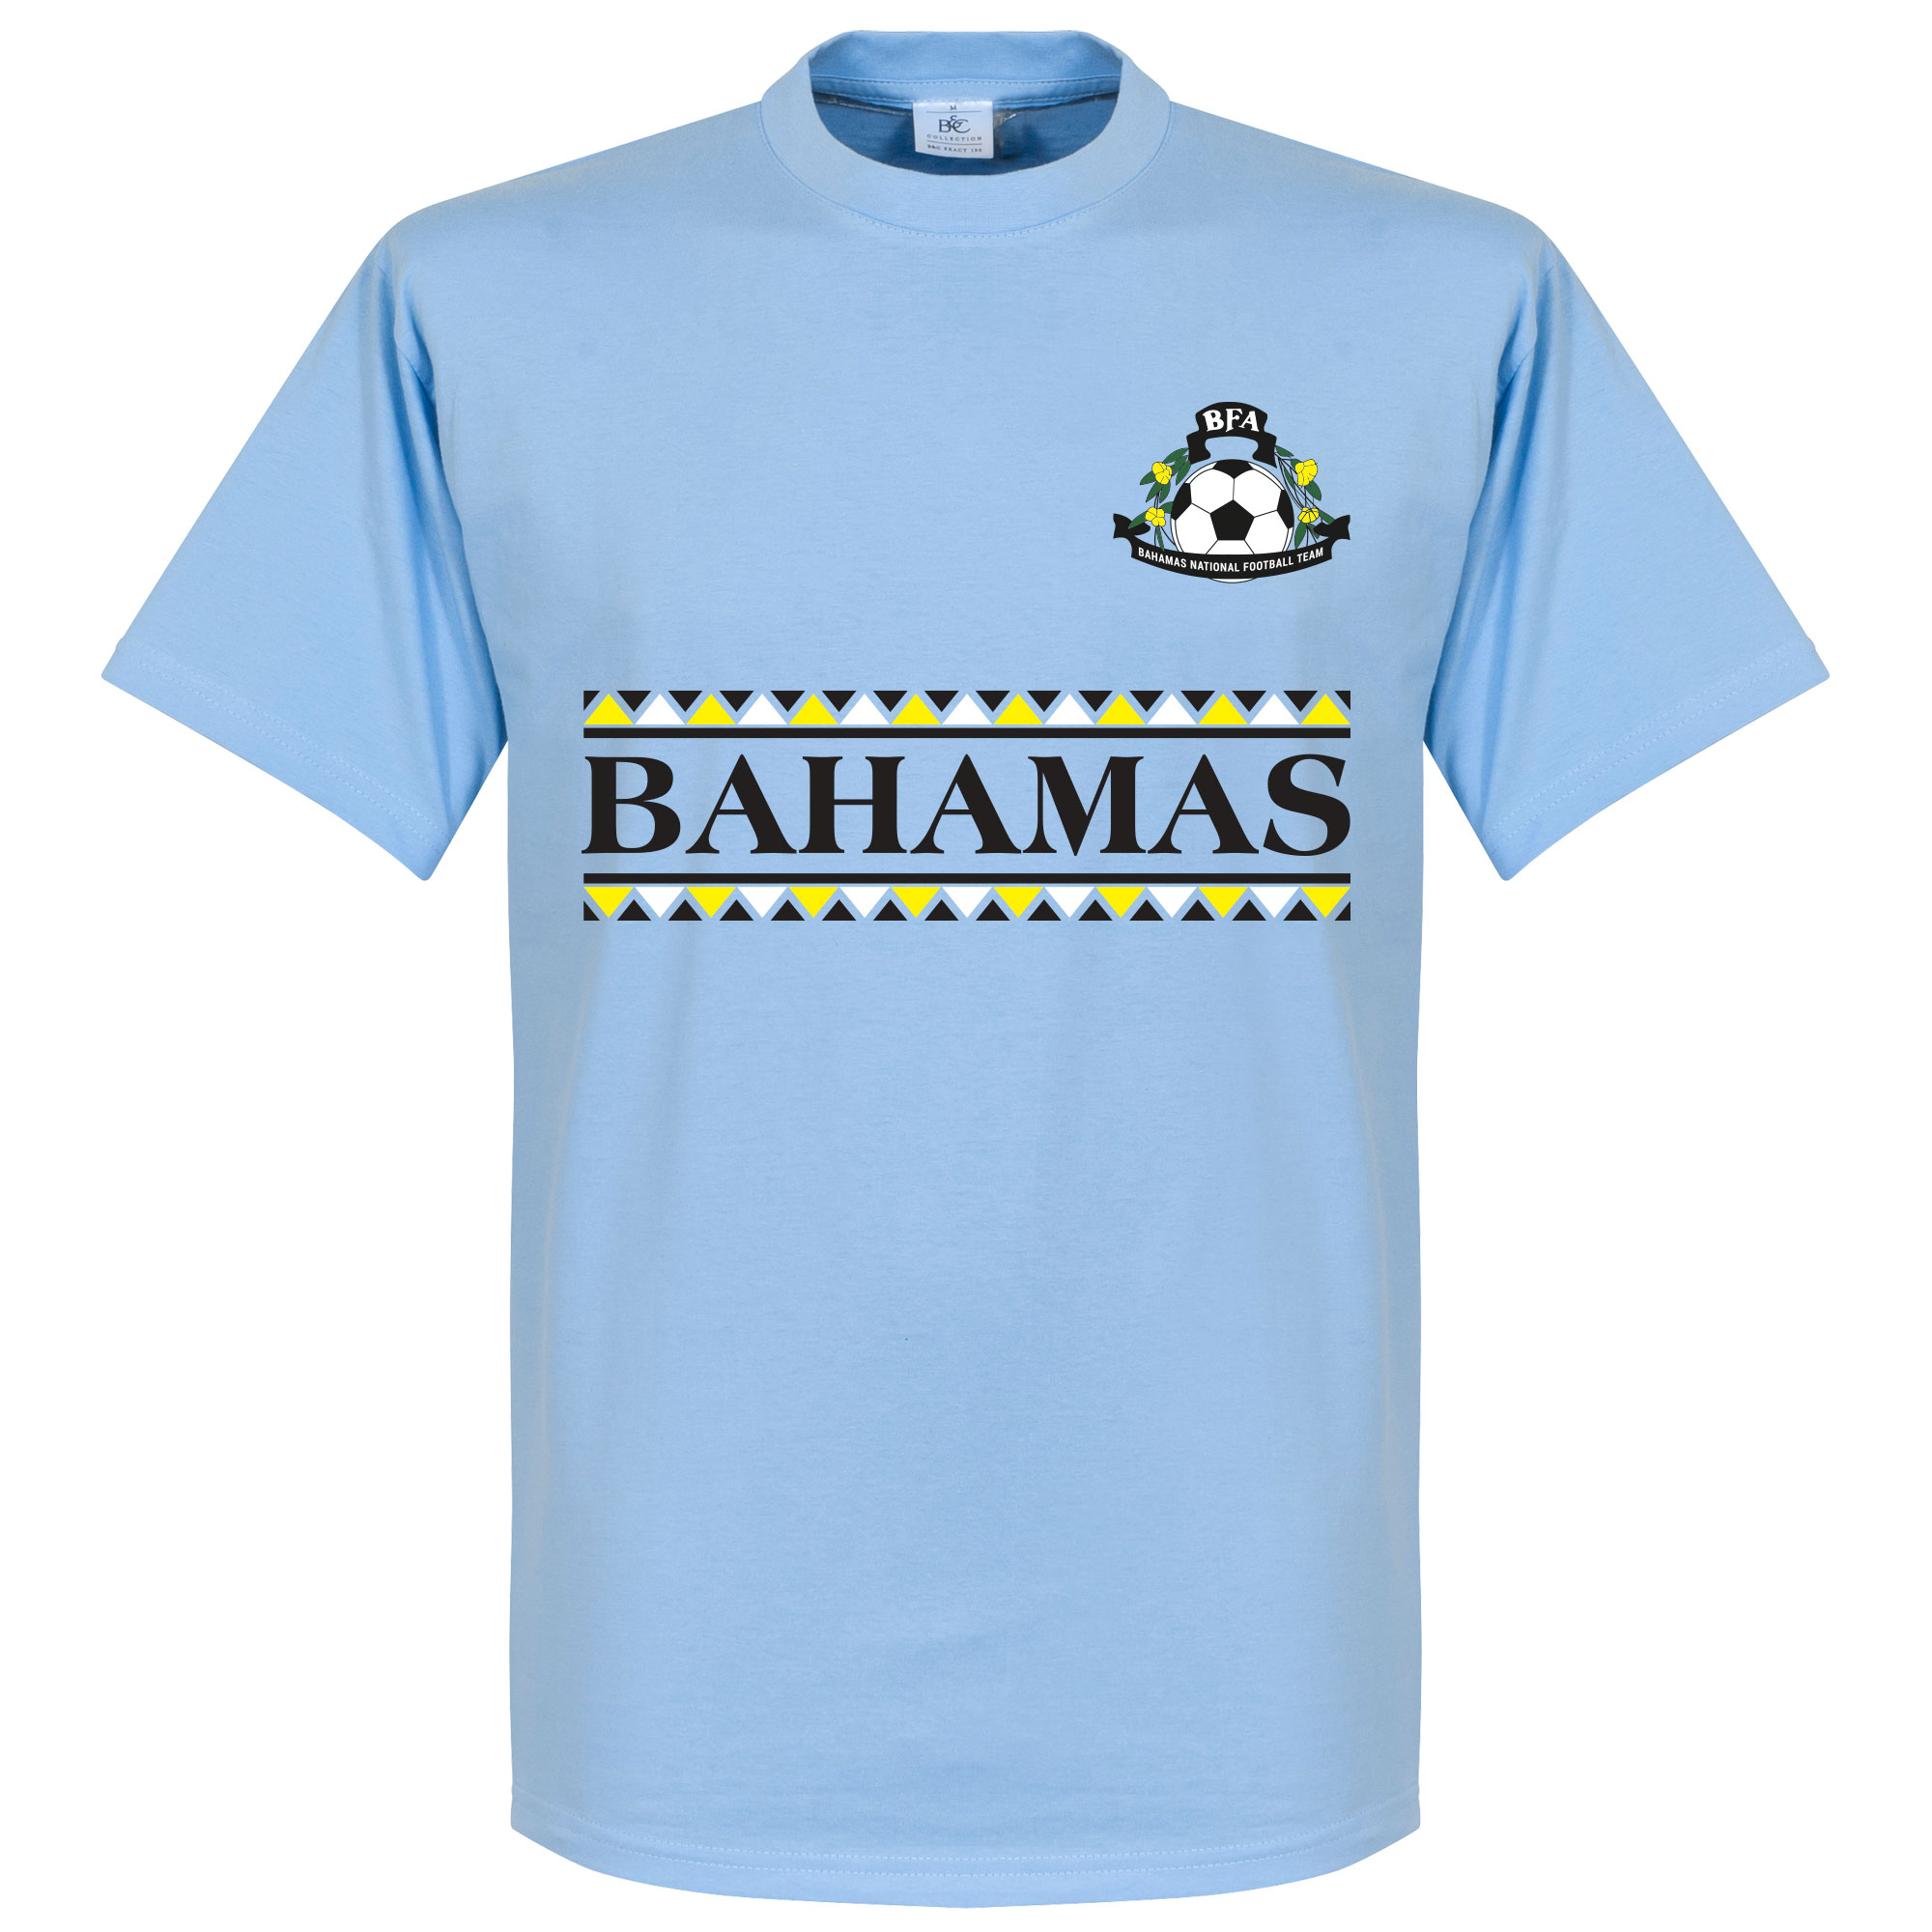 Bahama's Team T-Shirt